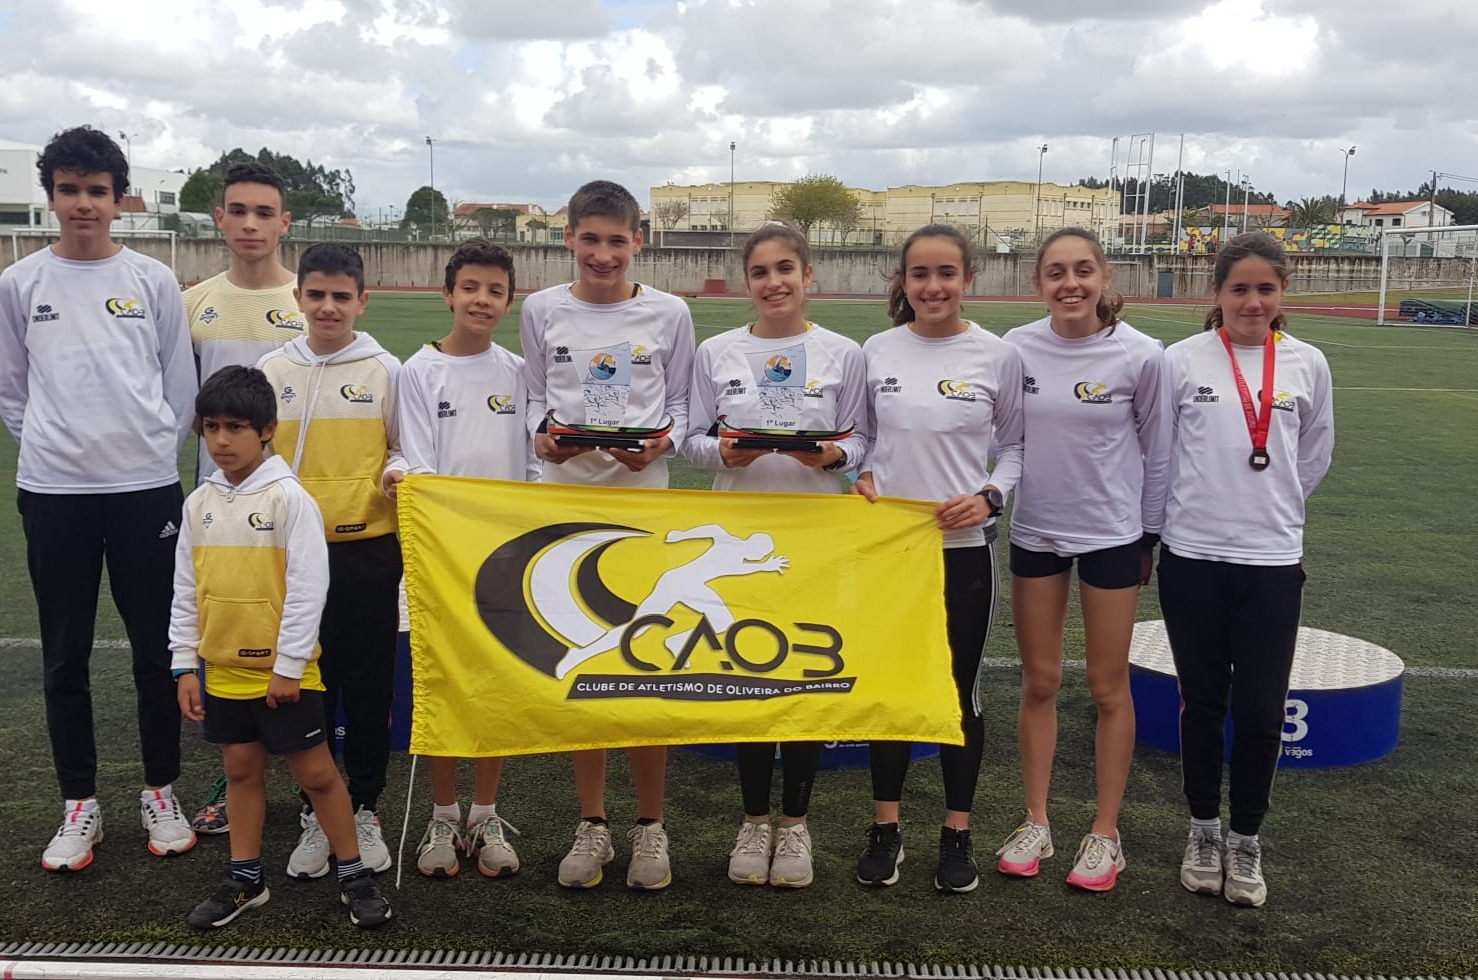 CAOB_ Clube de Atletismo de Oliveira do Bairro